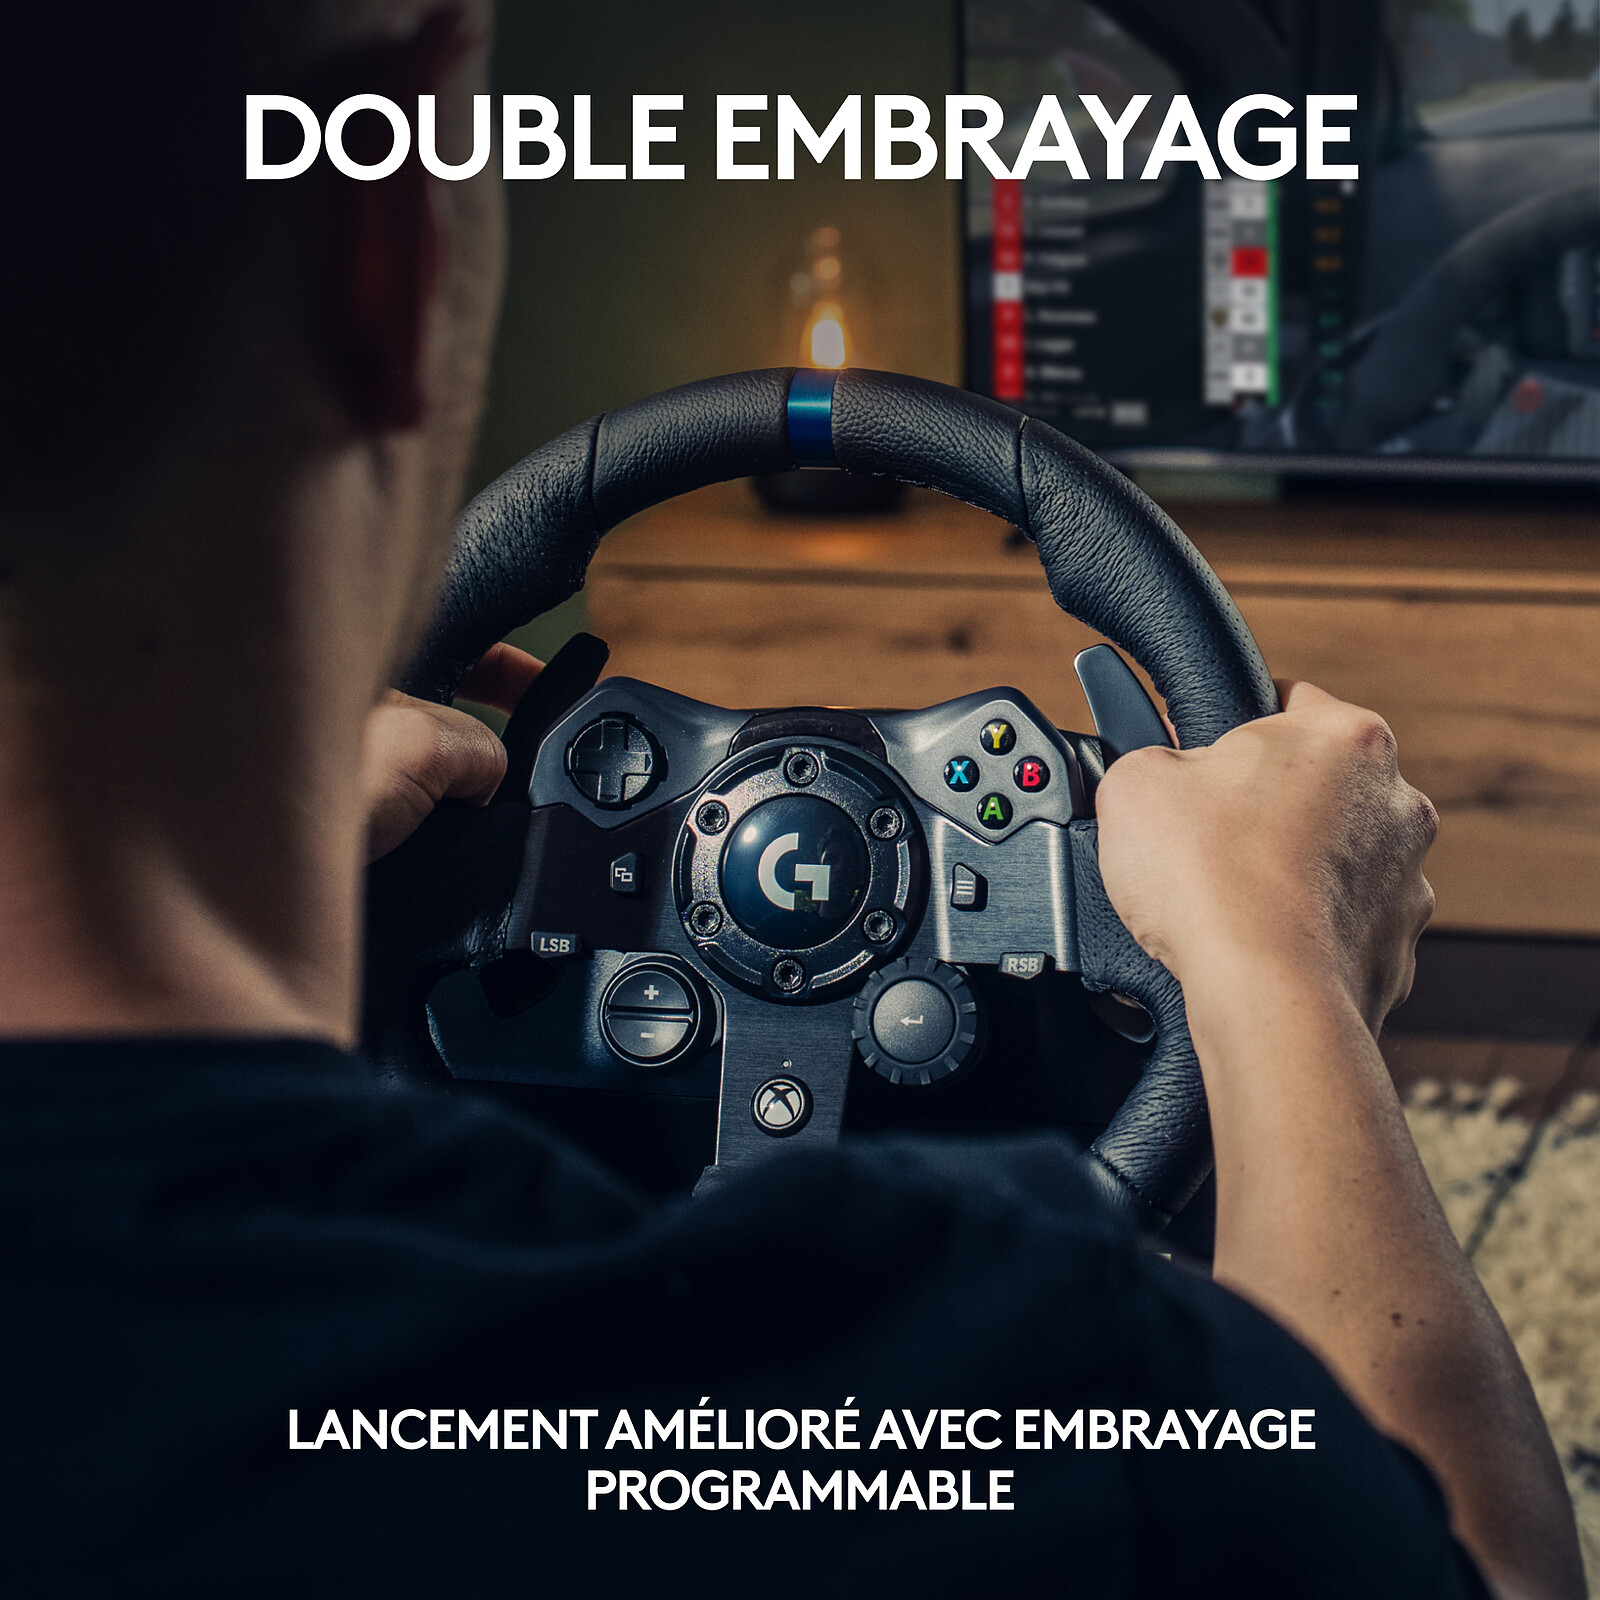 Análisis del volante Logitech G923 para PS4, Xbox One y PC, cual